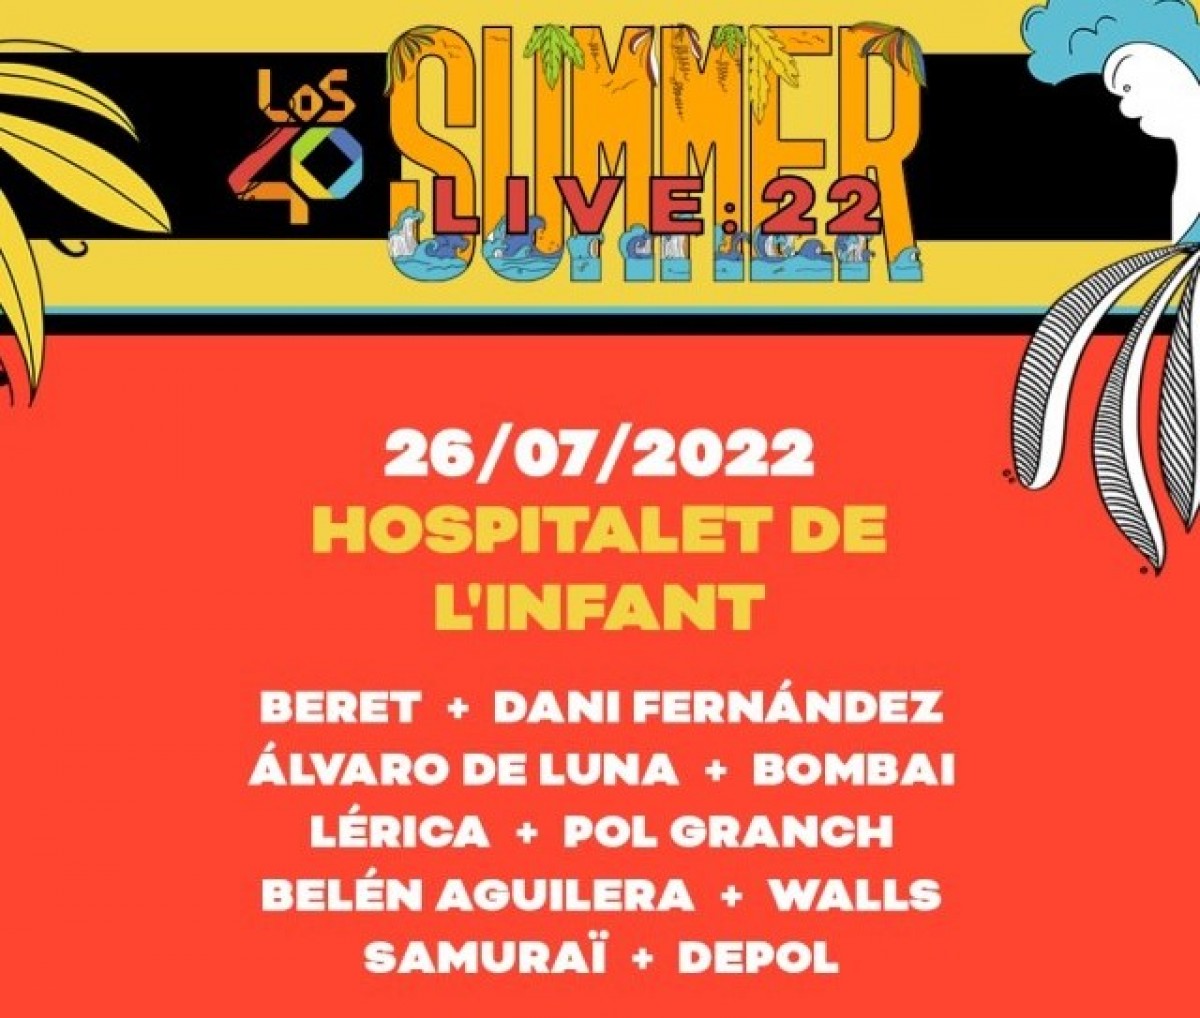 Detall del cartell de LOS40 Summer Live 2022 a l'Hospitalet de l'Infant